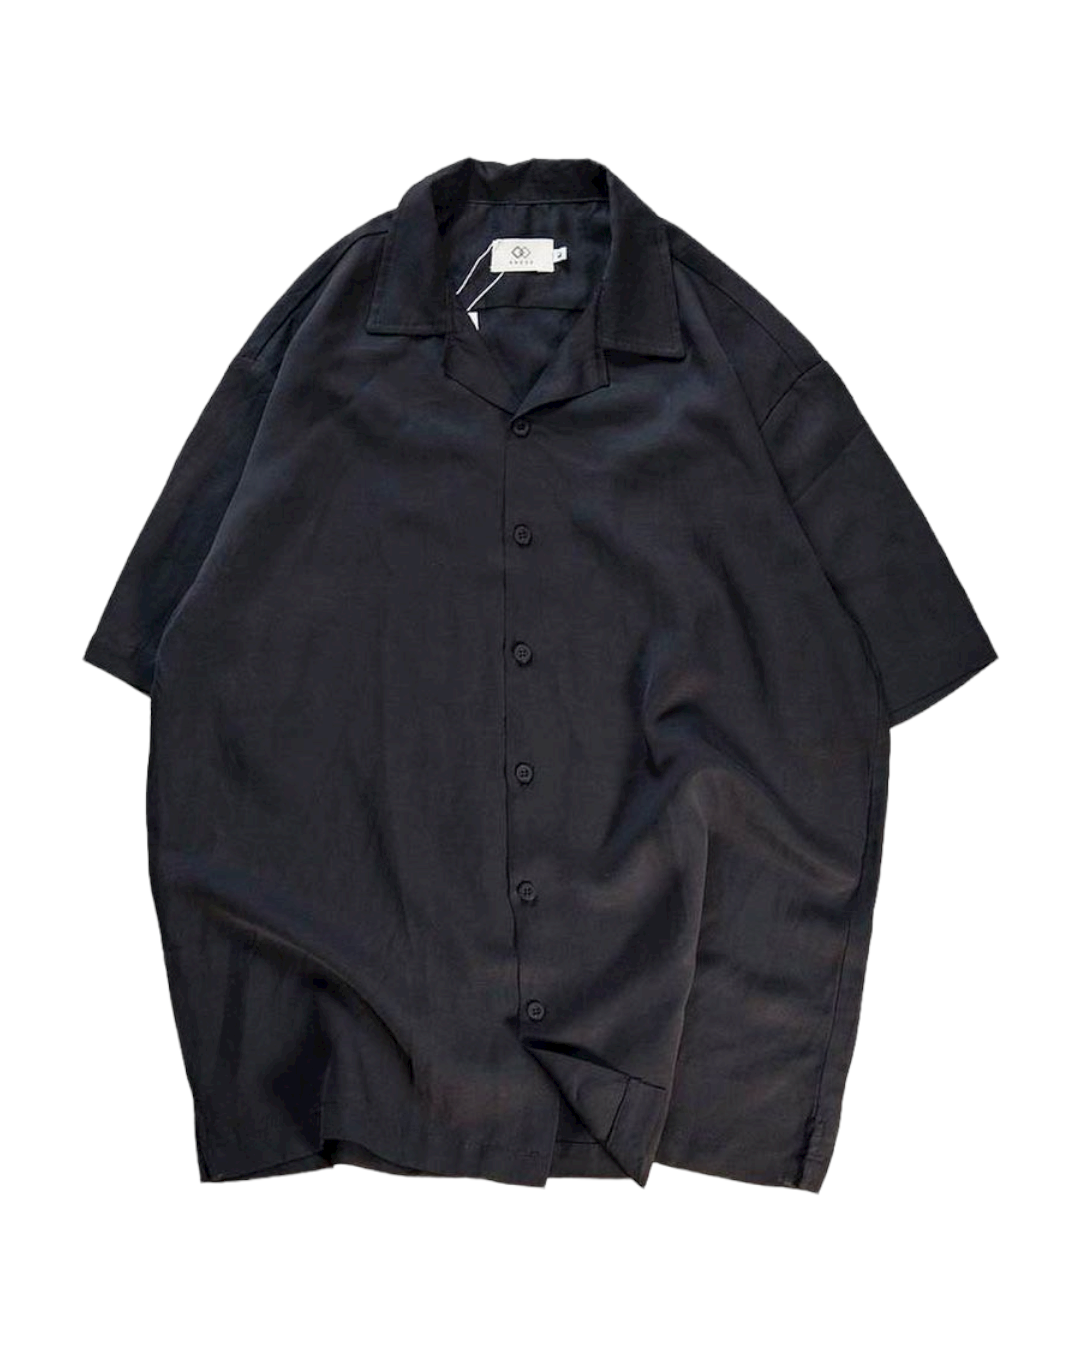 Linen open Collar Shirt (Black)